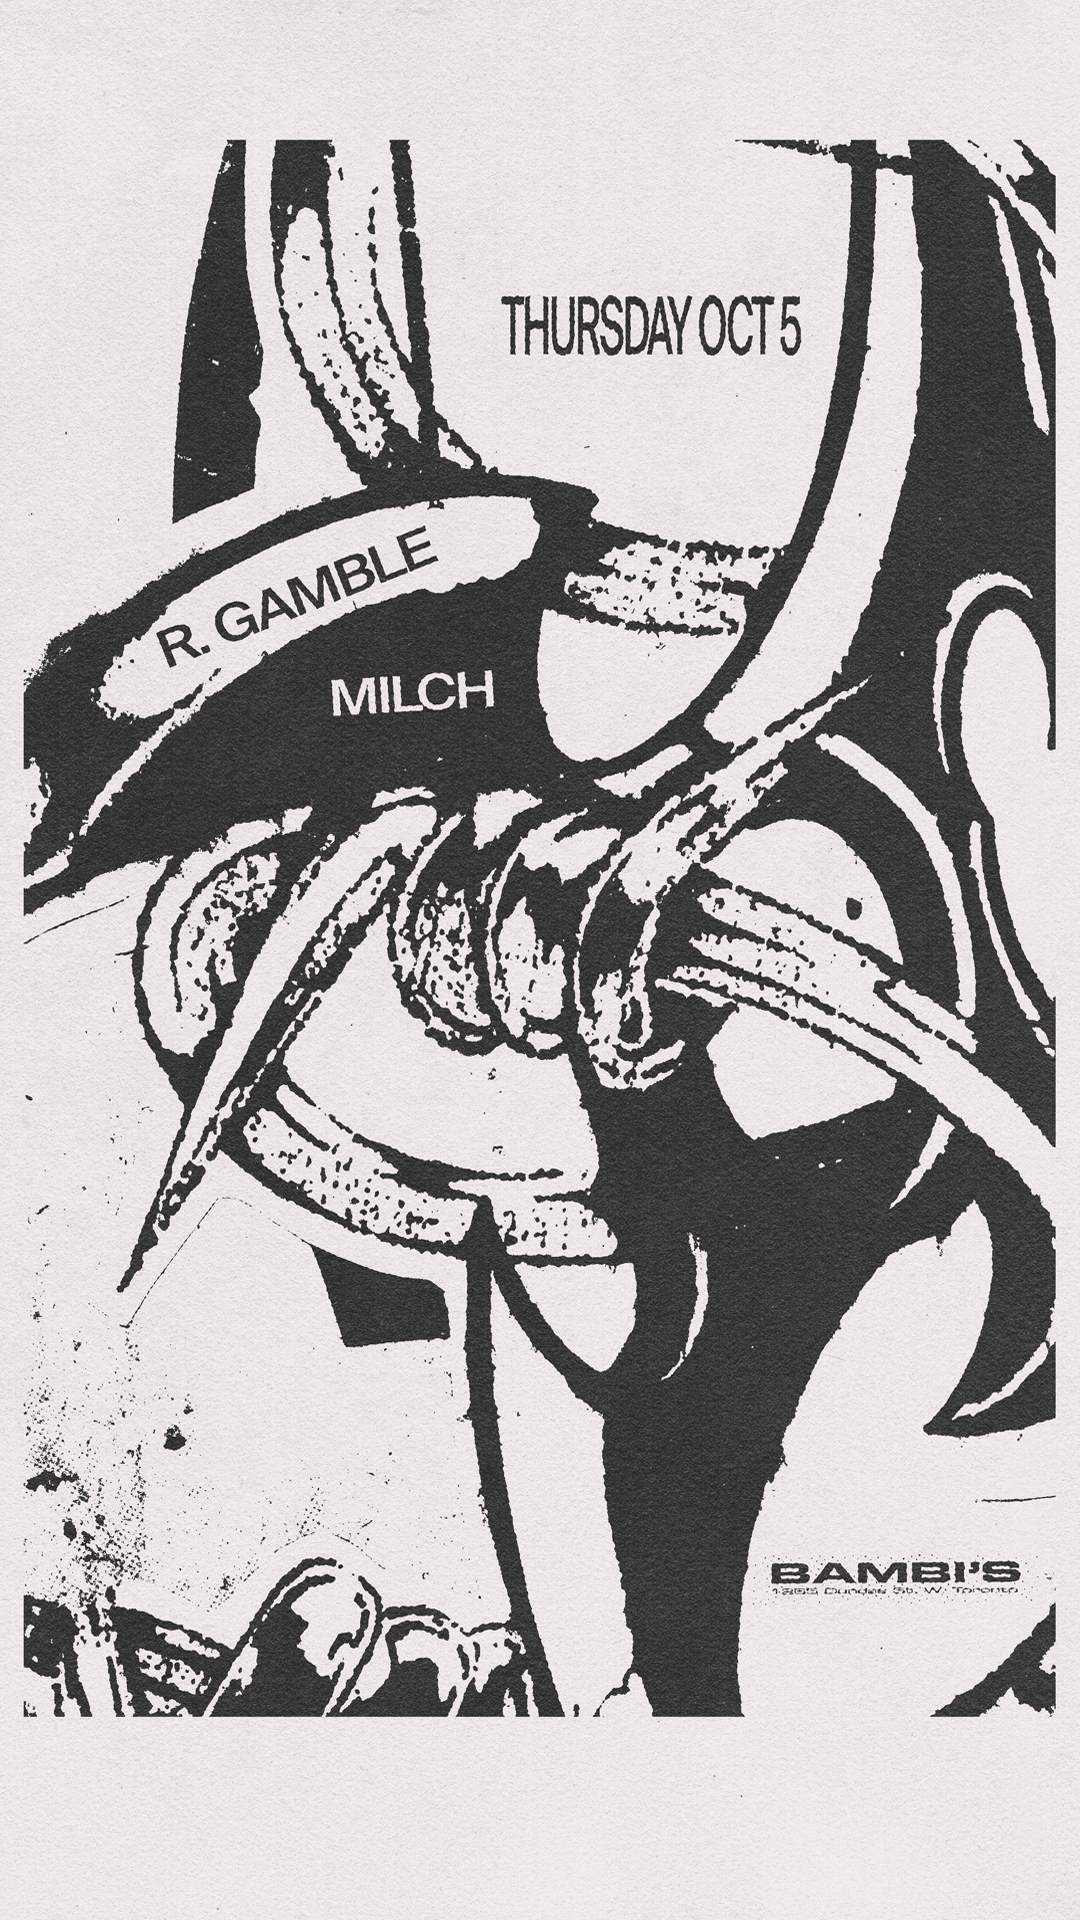 R Gamble & Milch - Página frontal